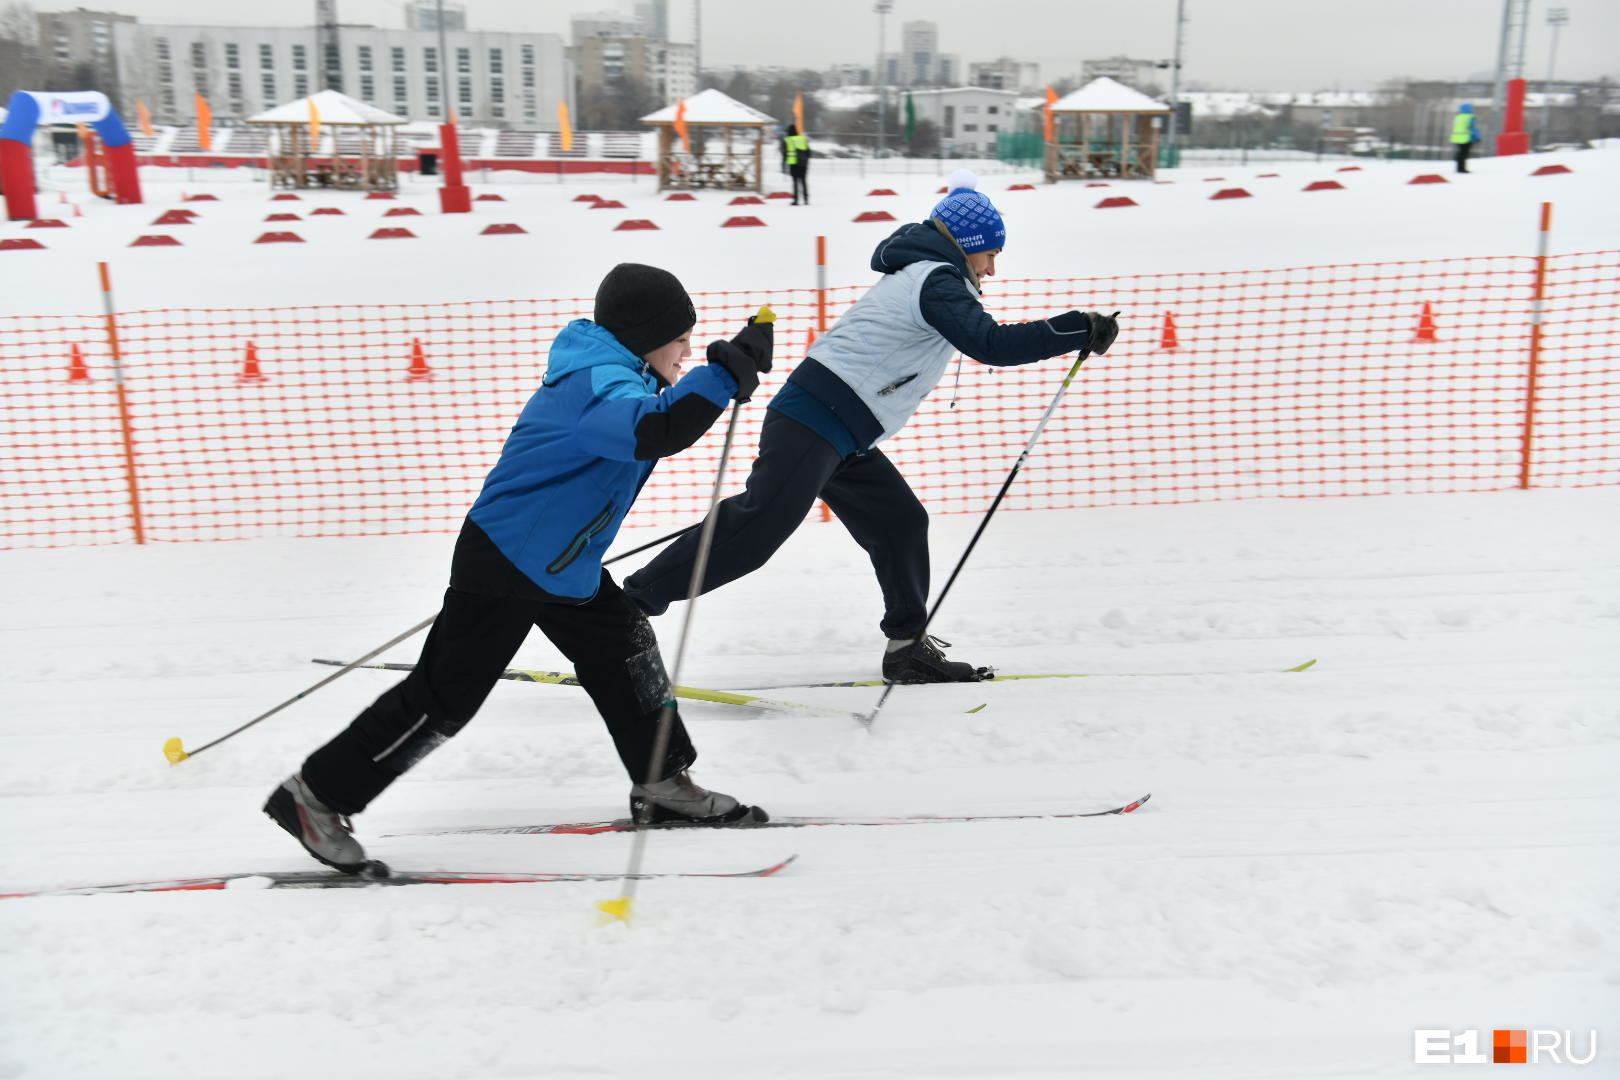 Лыжные трассы и катки в Чите начали готовить к зимнему сезону